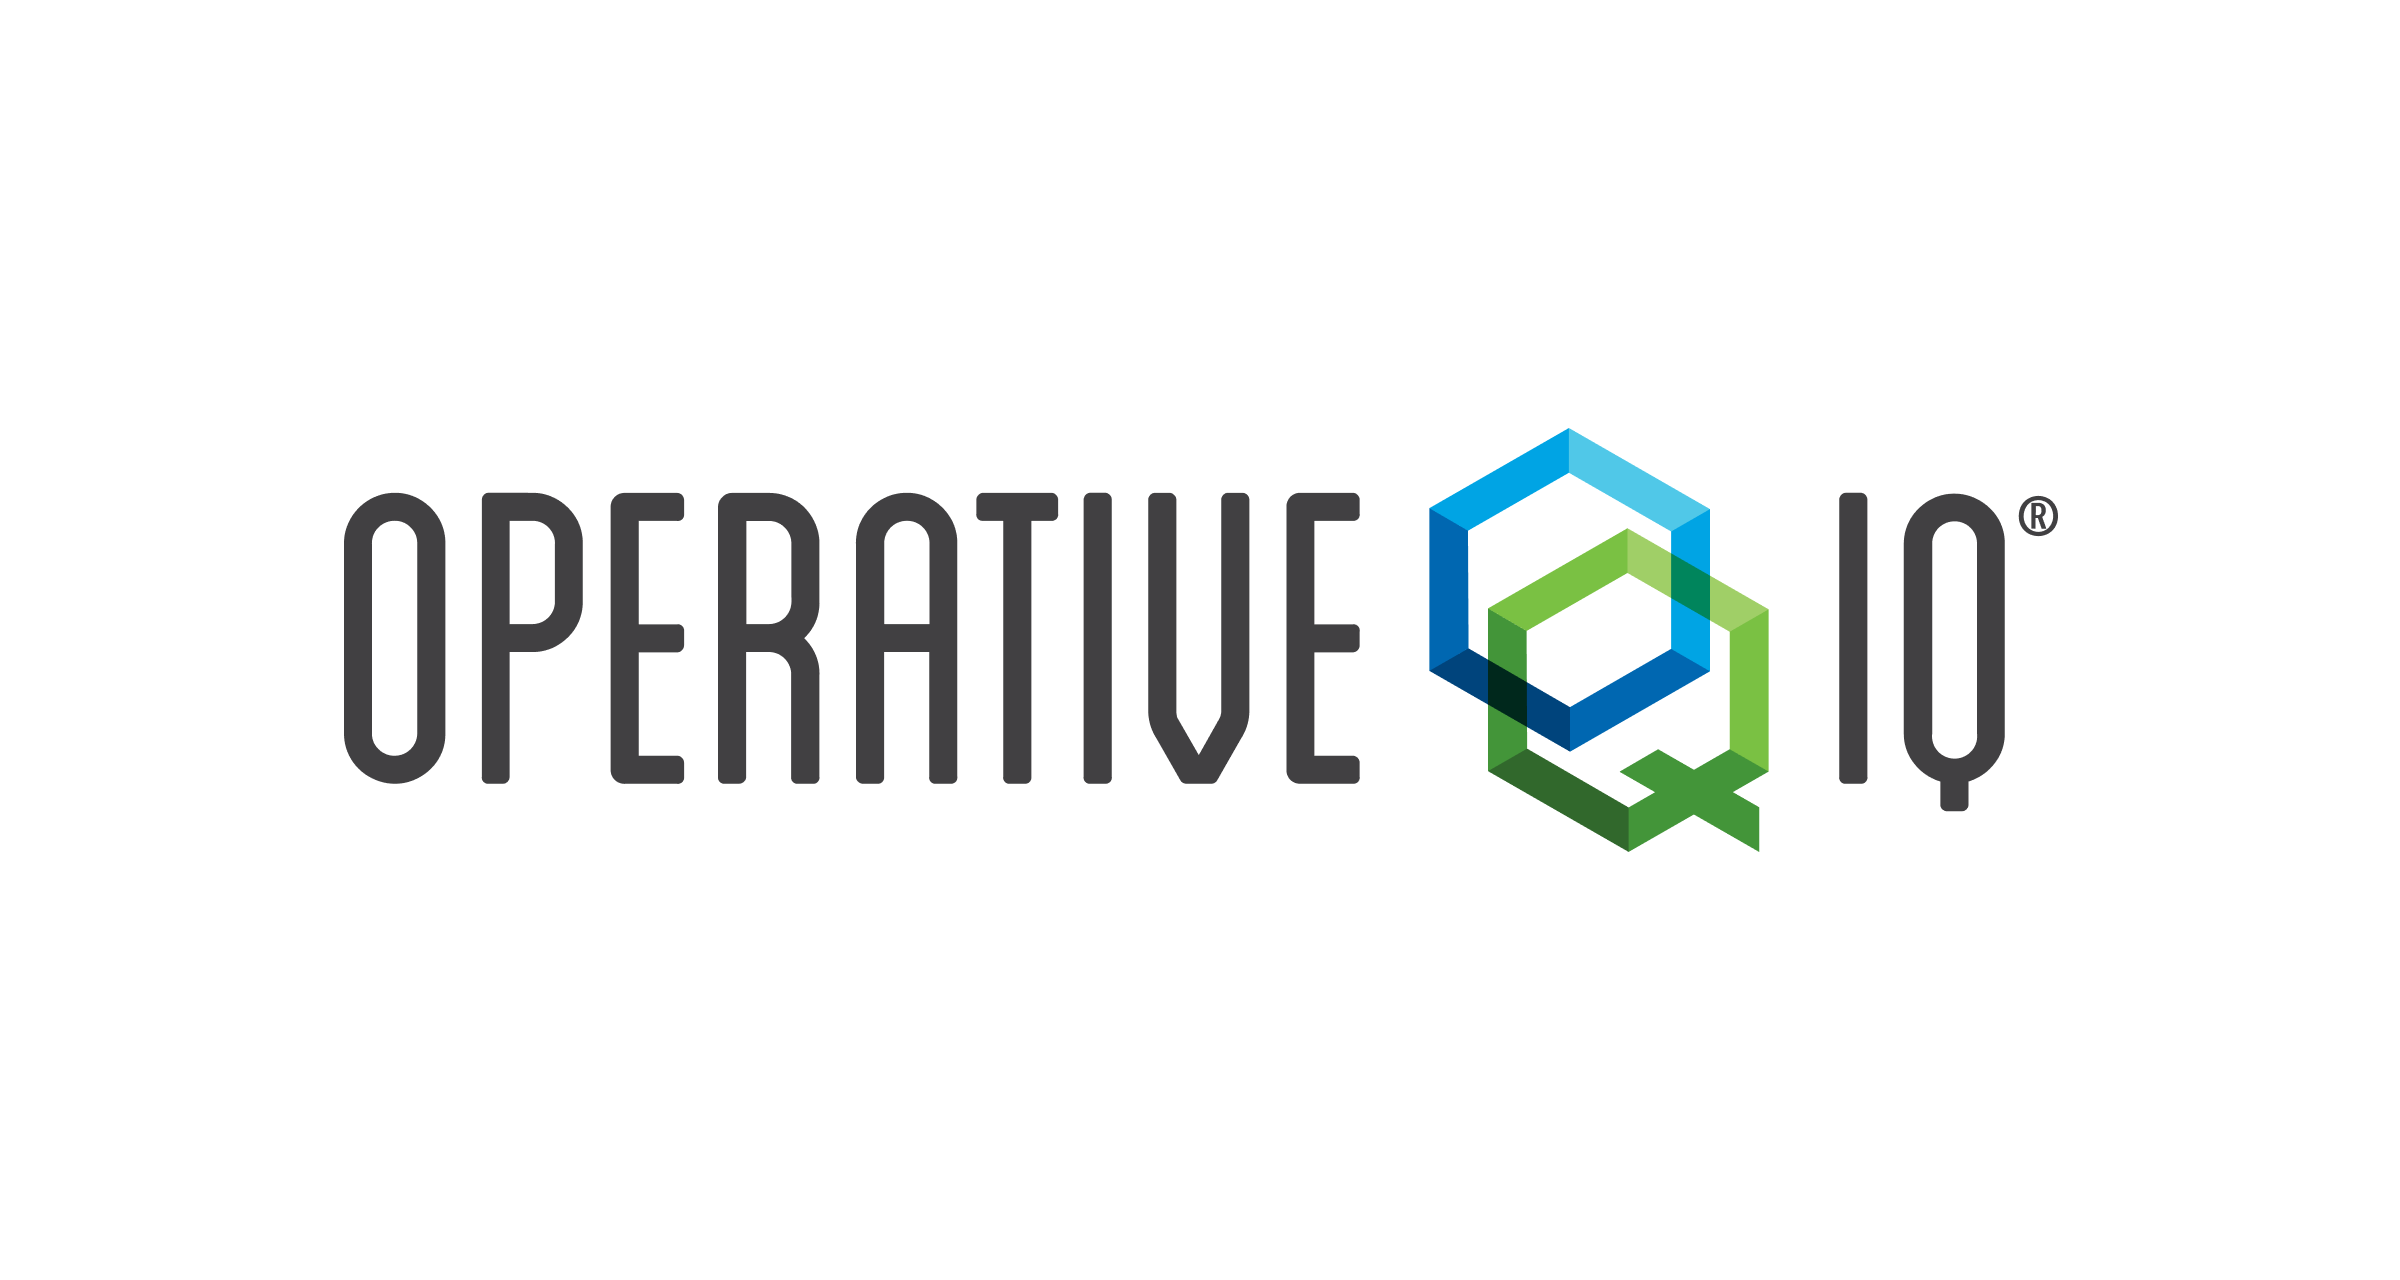 www.operativeiq.com